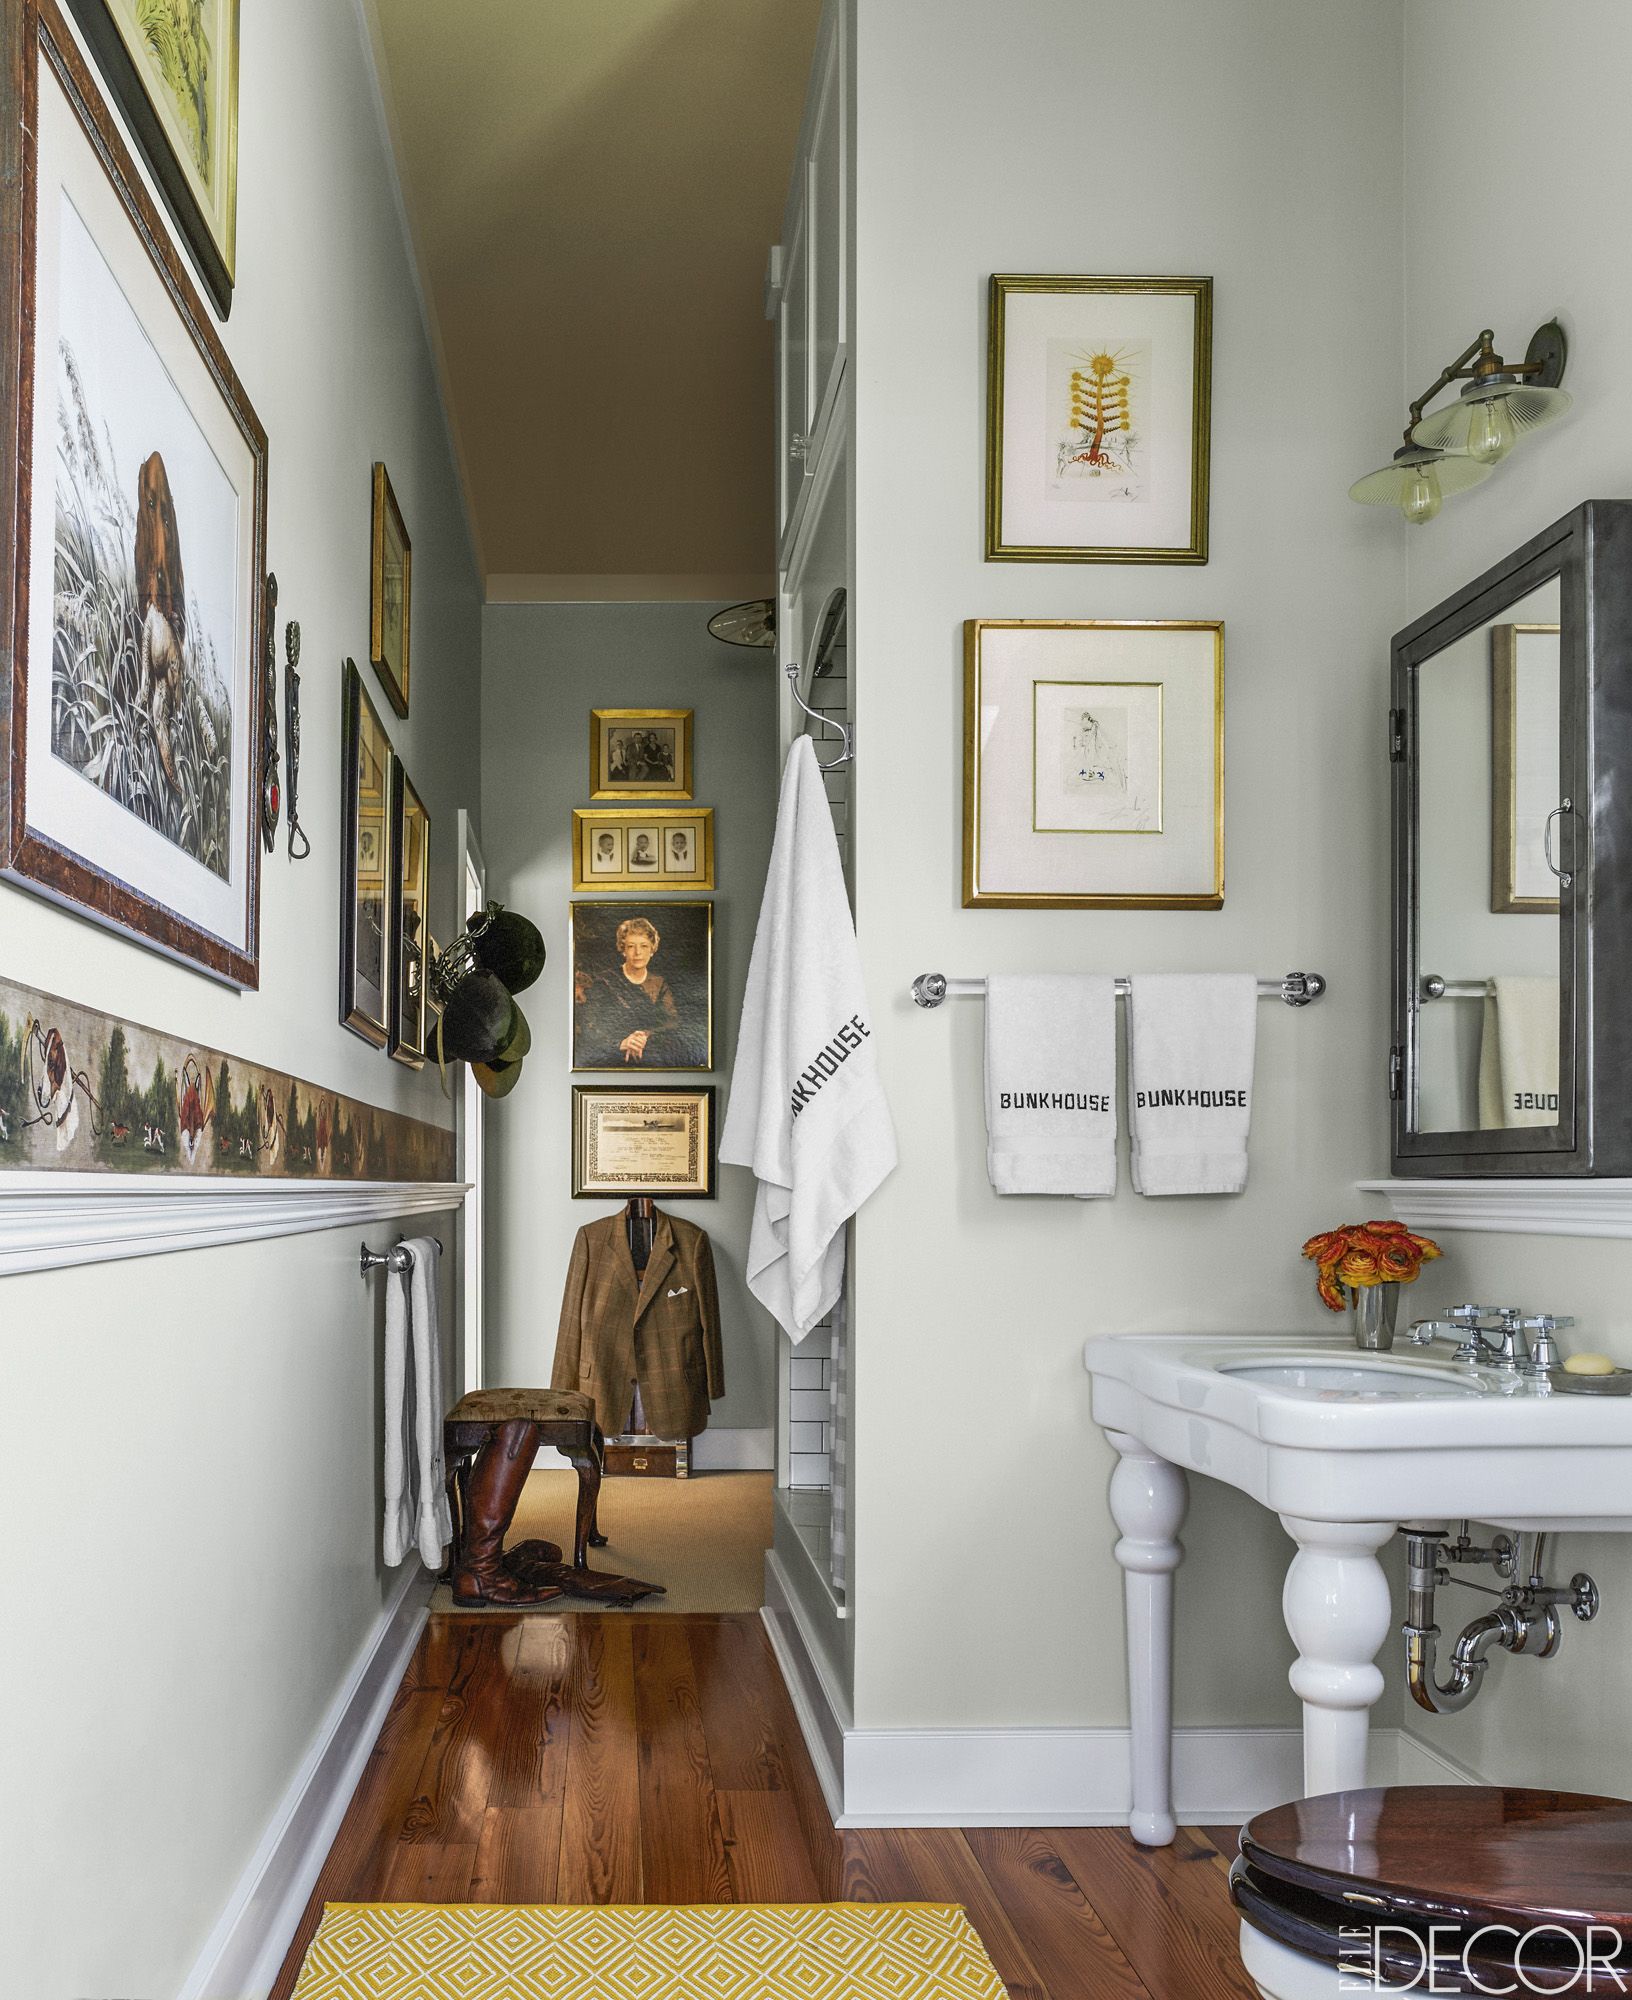 20 Ideas For Rustic Bathroom Decor Room Ideas